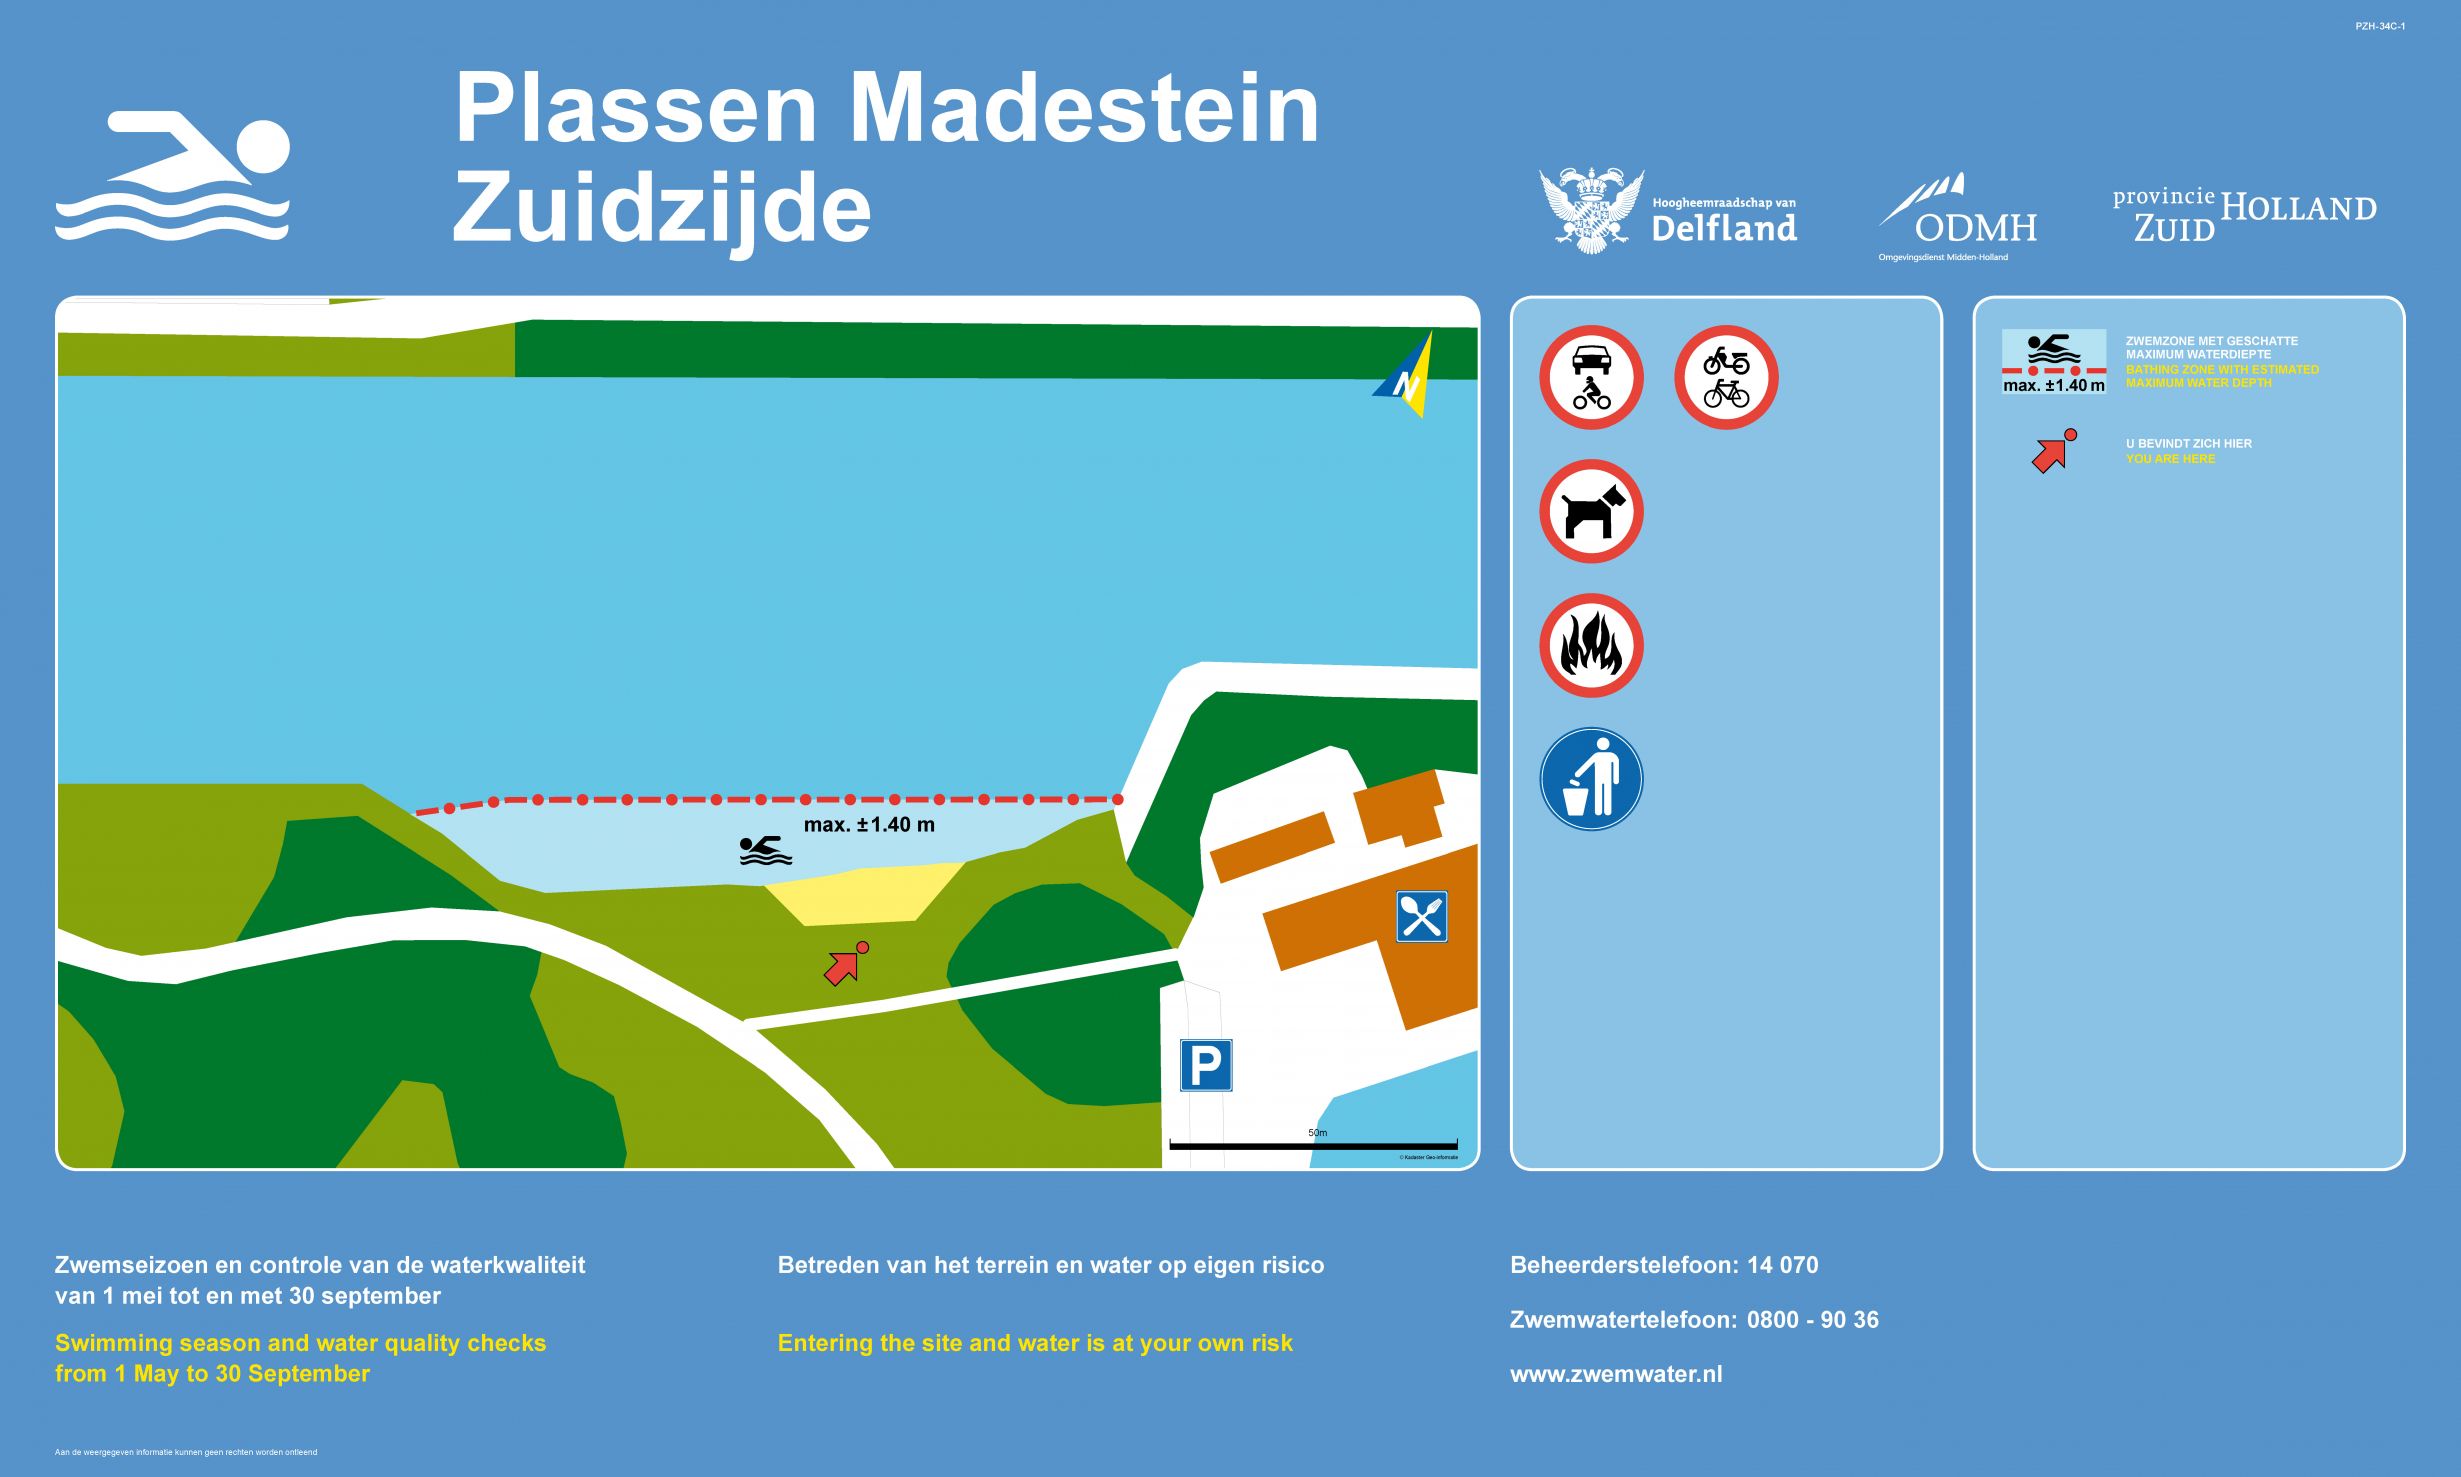 The information board at the swimming location Plassen Madestein, Zuidzijde